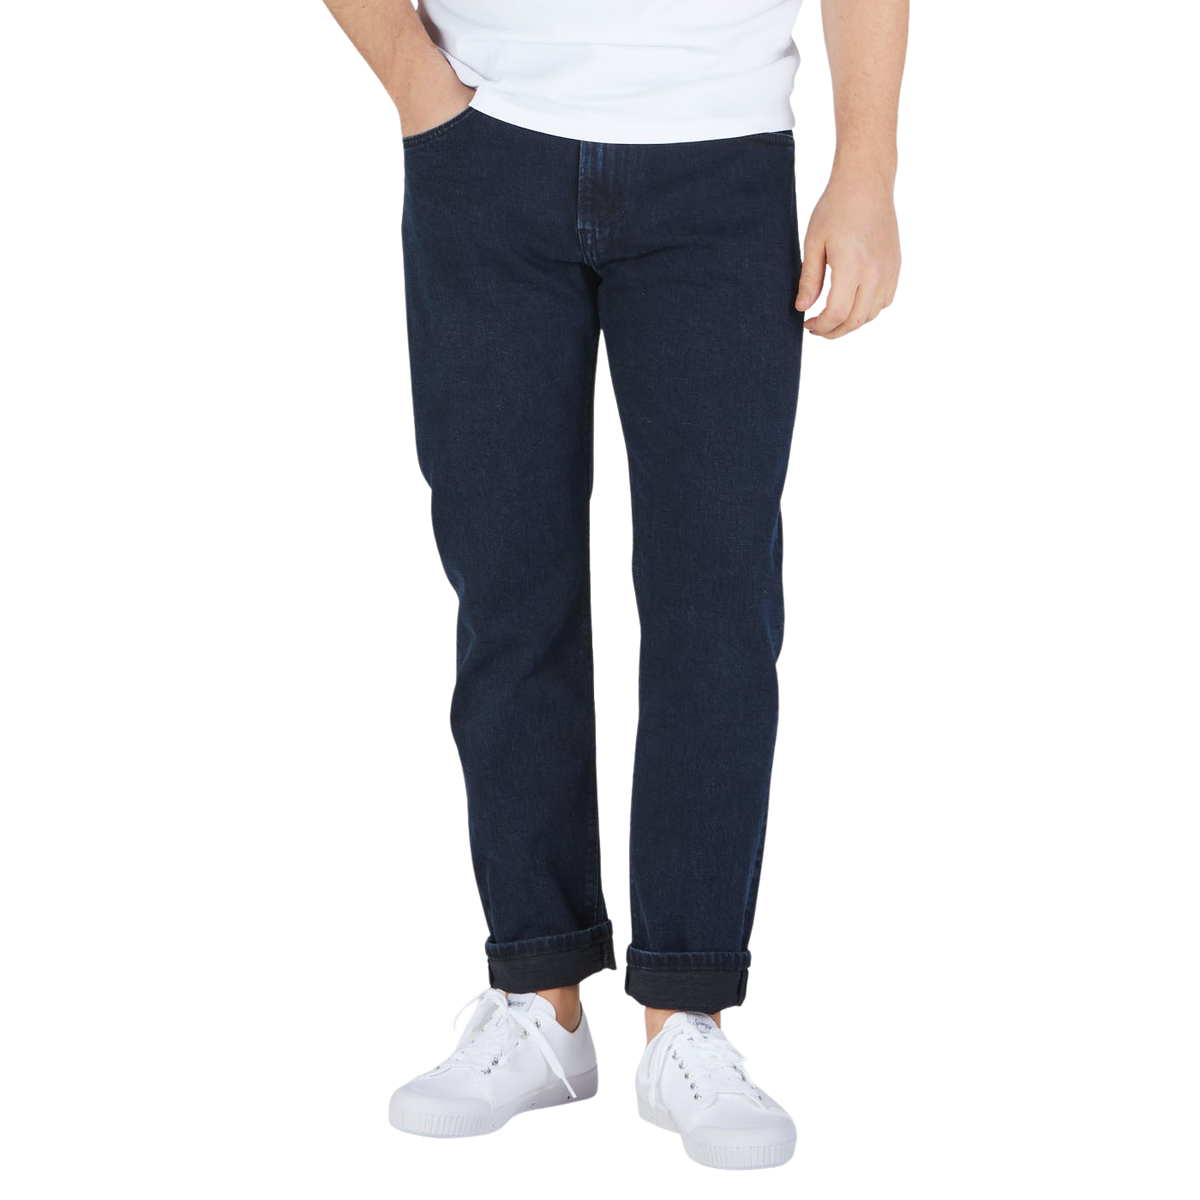 Jenerica Blue Black Cotton TM005 Jeans Front